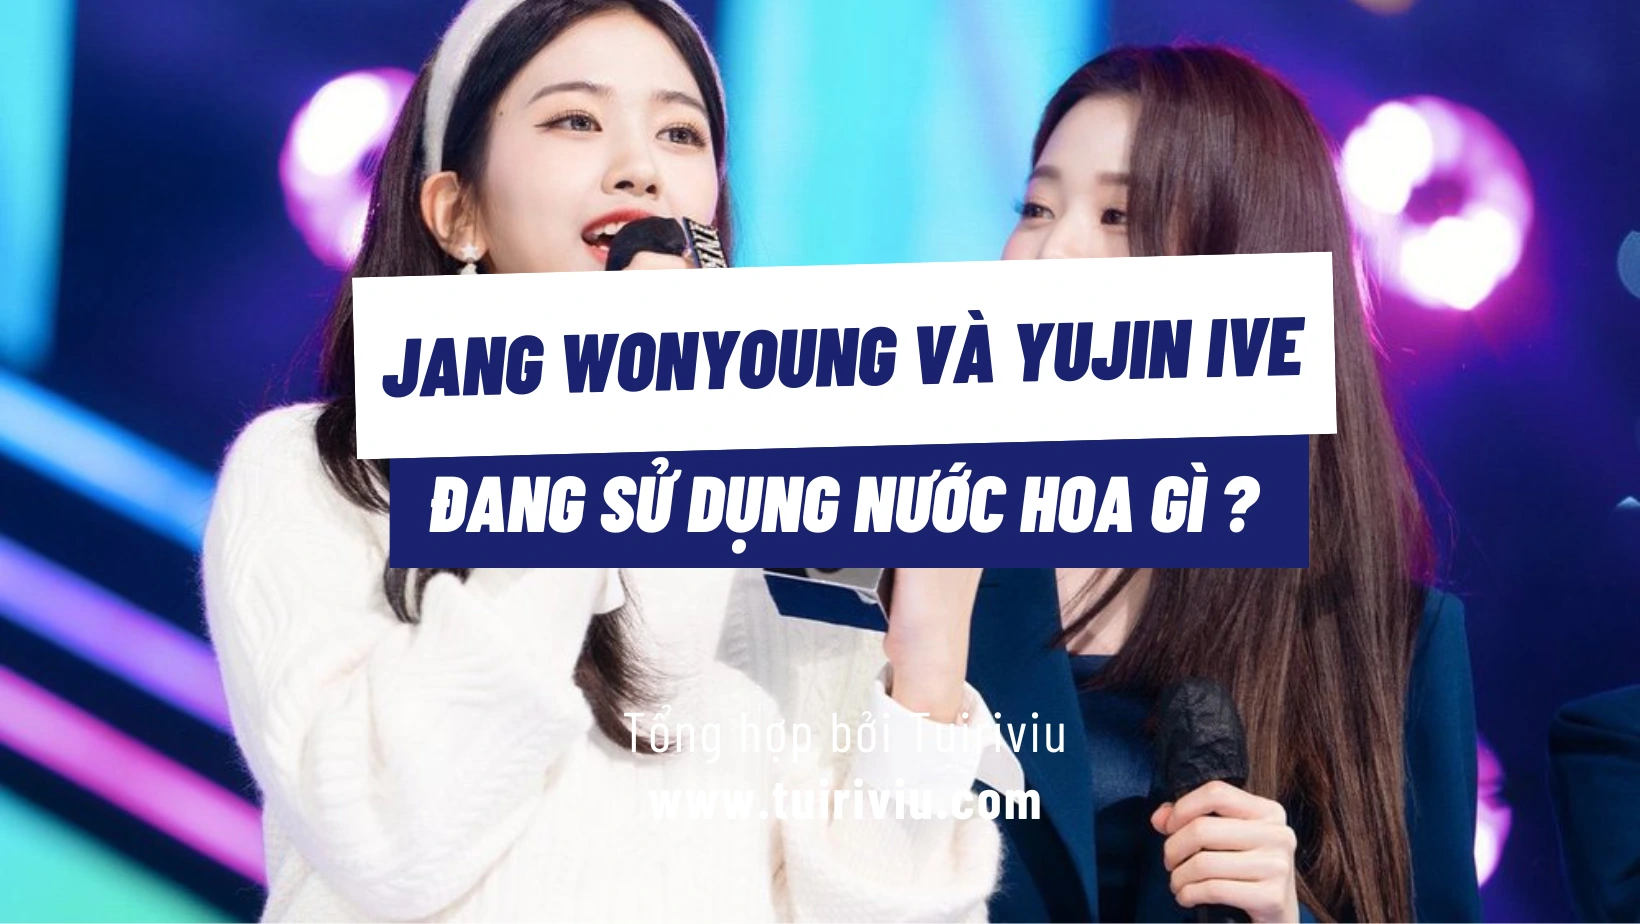 Jang Wonyoung và Yujin IVE dùng nước hoa gì?